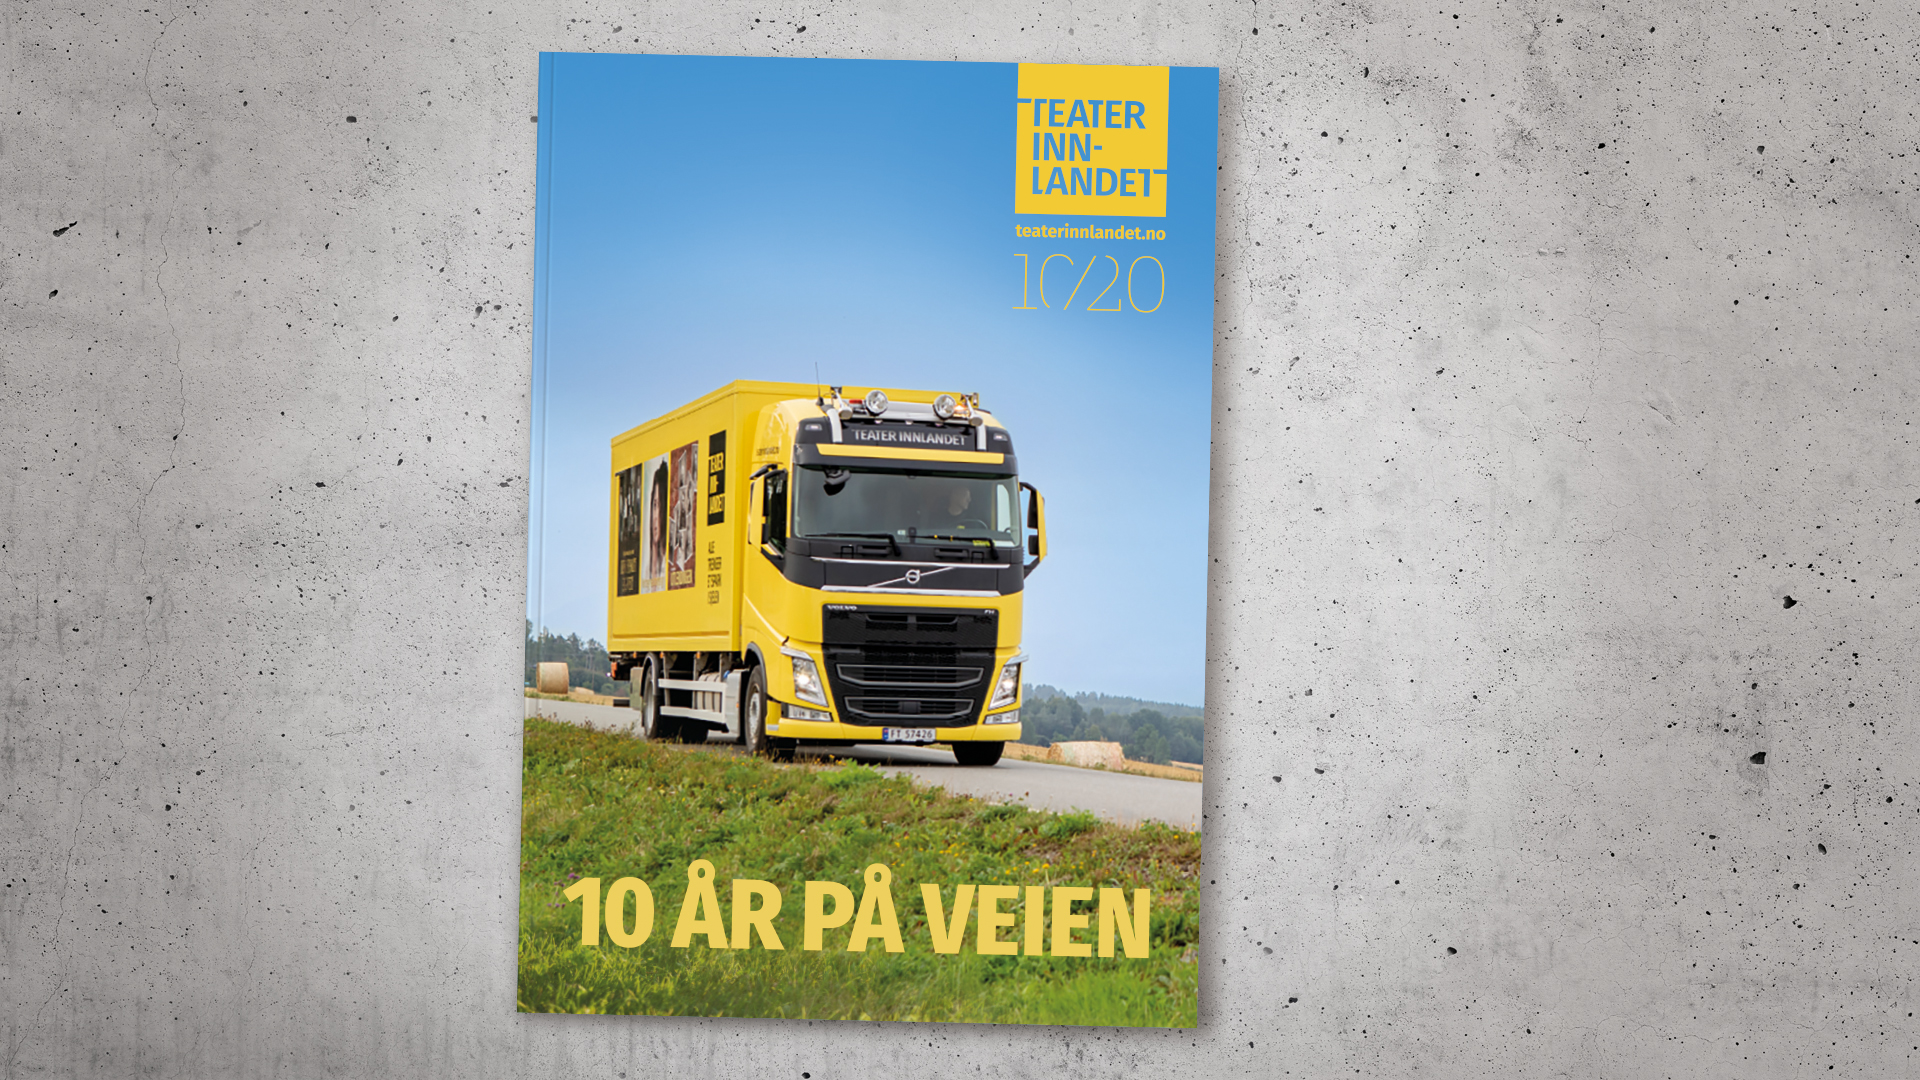 Bilde av katalog, gul lastebil, tekst 10 ÅR PÅ VEIEN